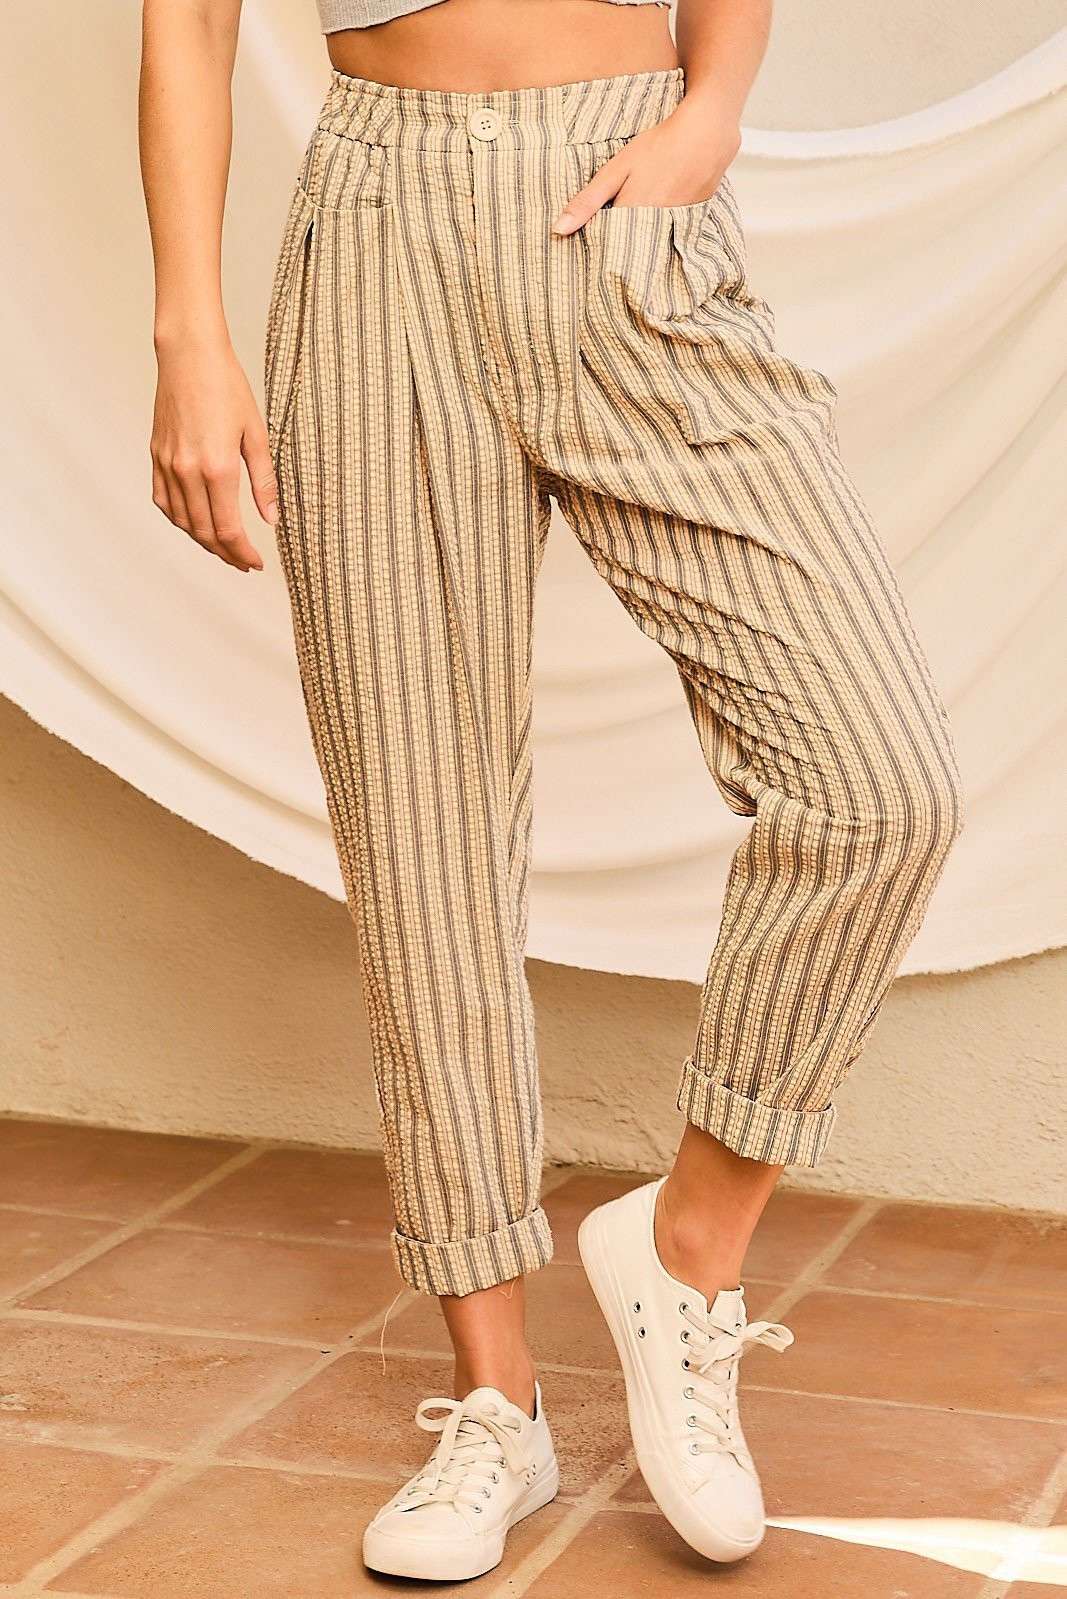 Main Strip - Band Waist Zipper Front Pockets Stripe Pants